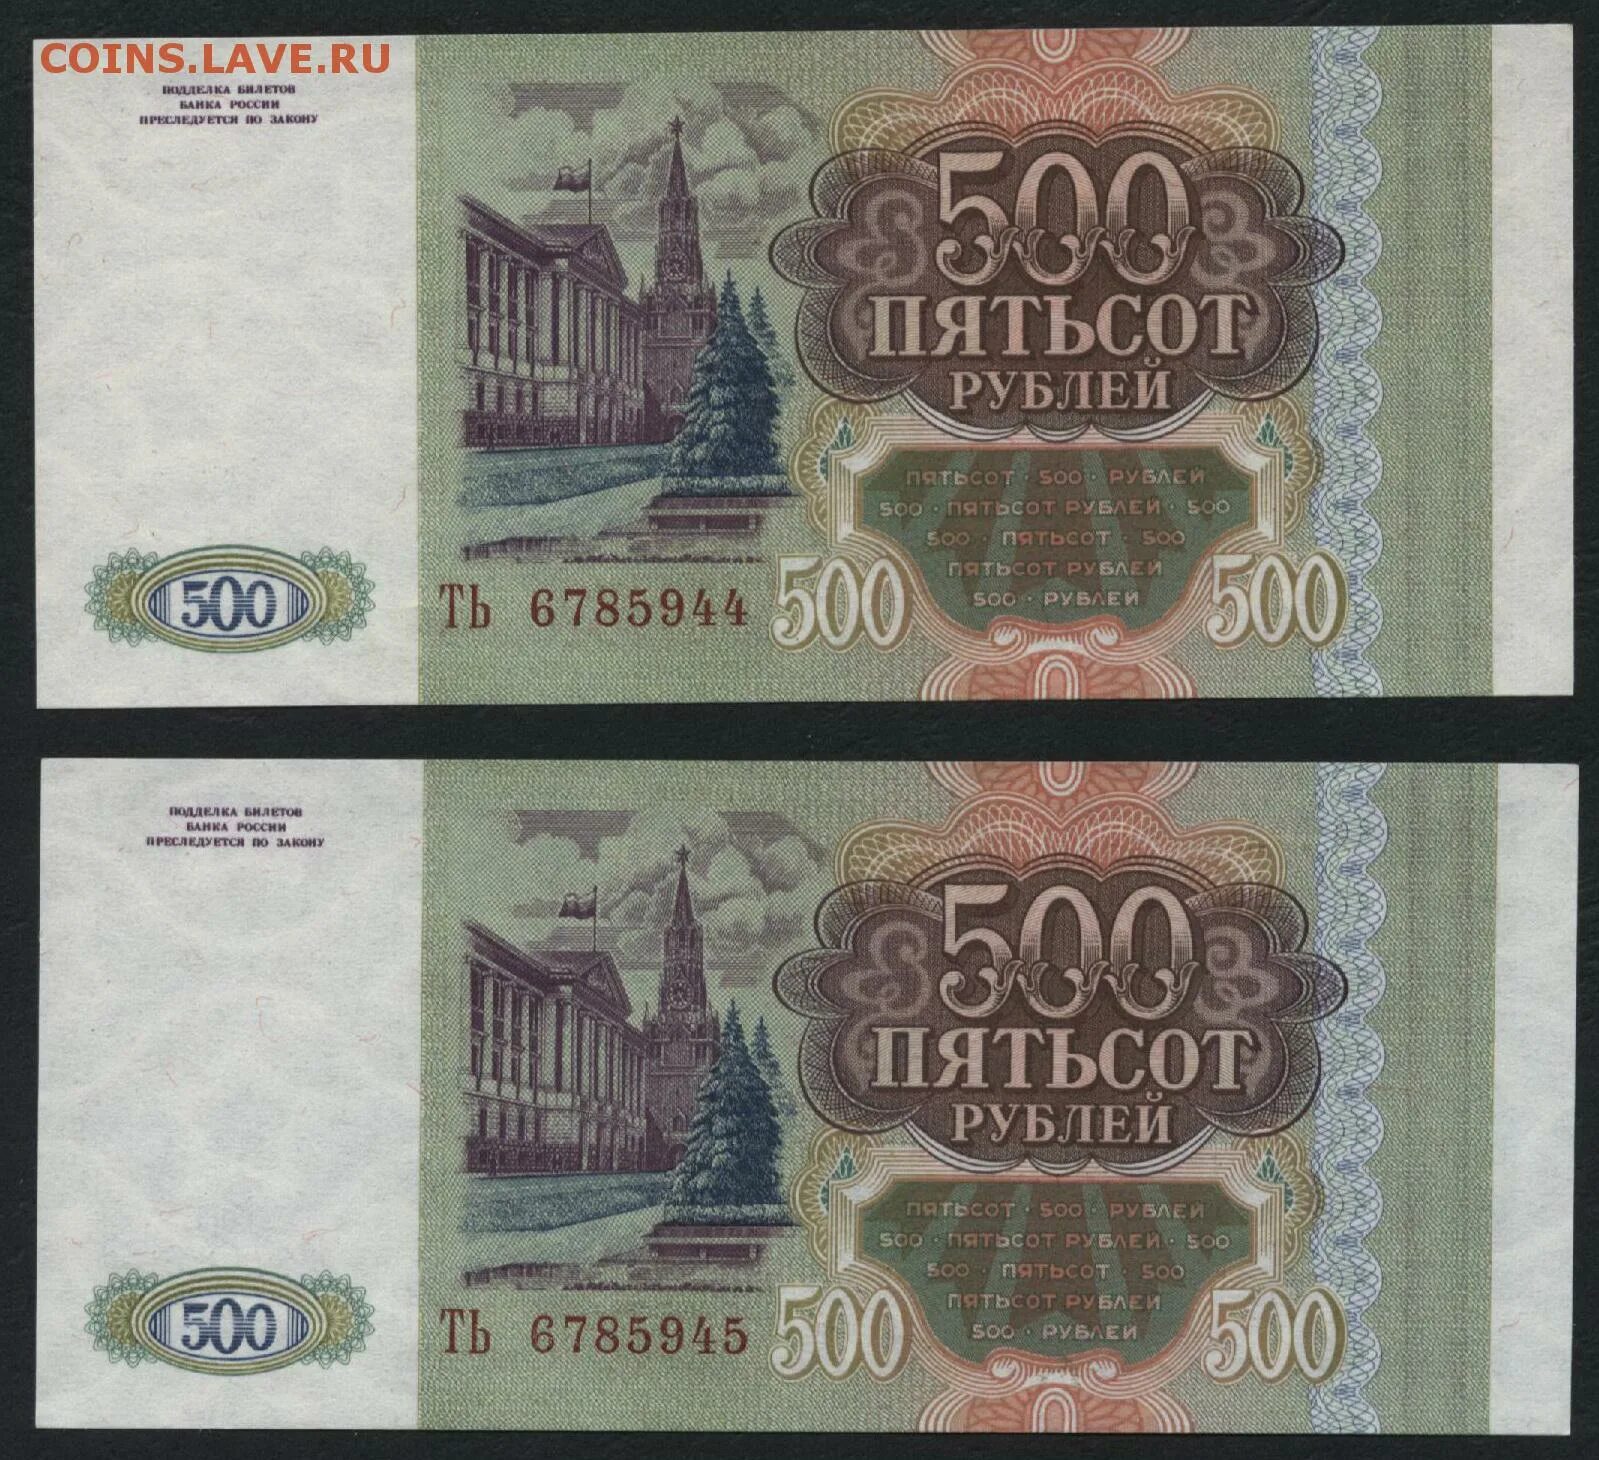 16 500 в рублях. 500 Рублей. 500 Рублей 1993. Пятьсот рублей 1993. 500 Рублей 1993 года.